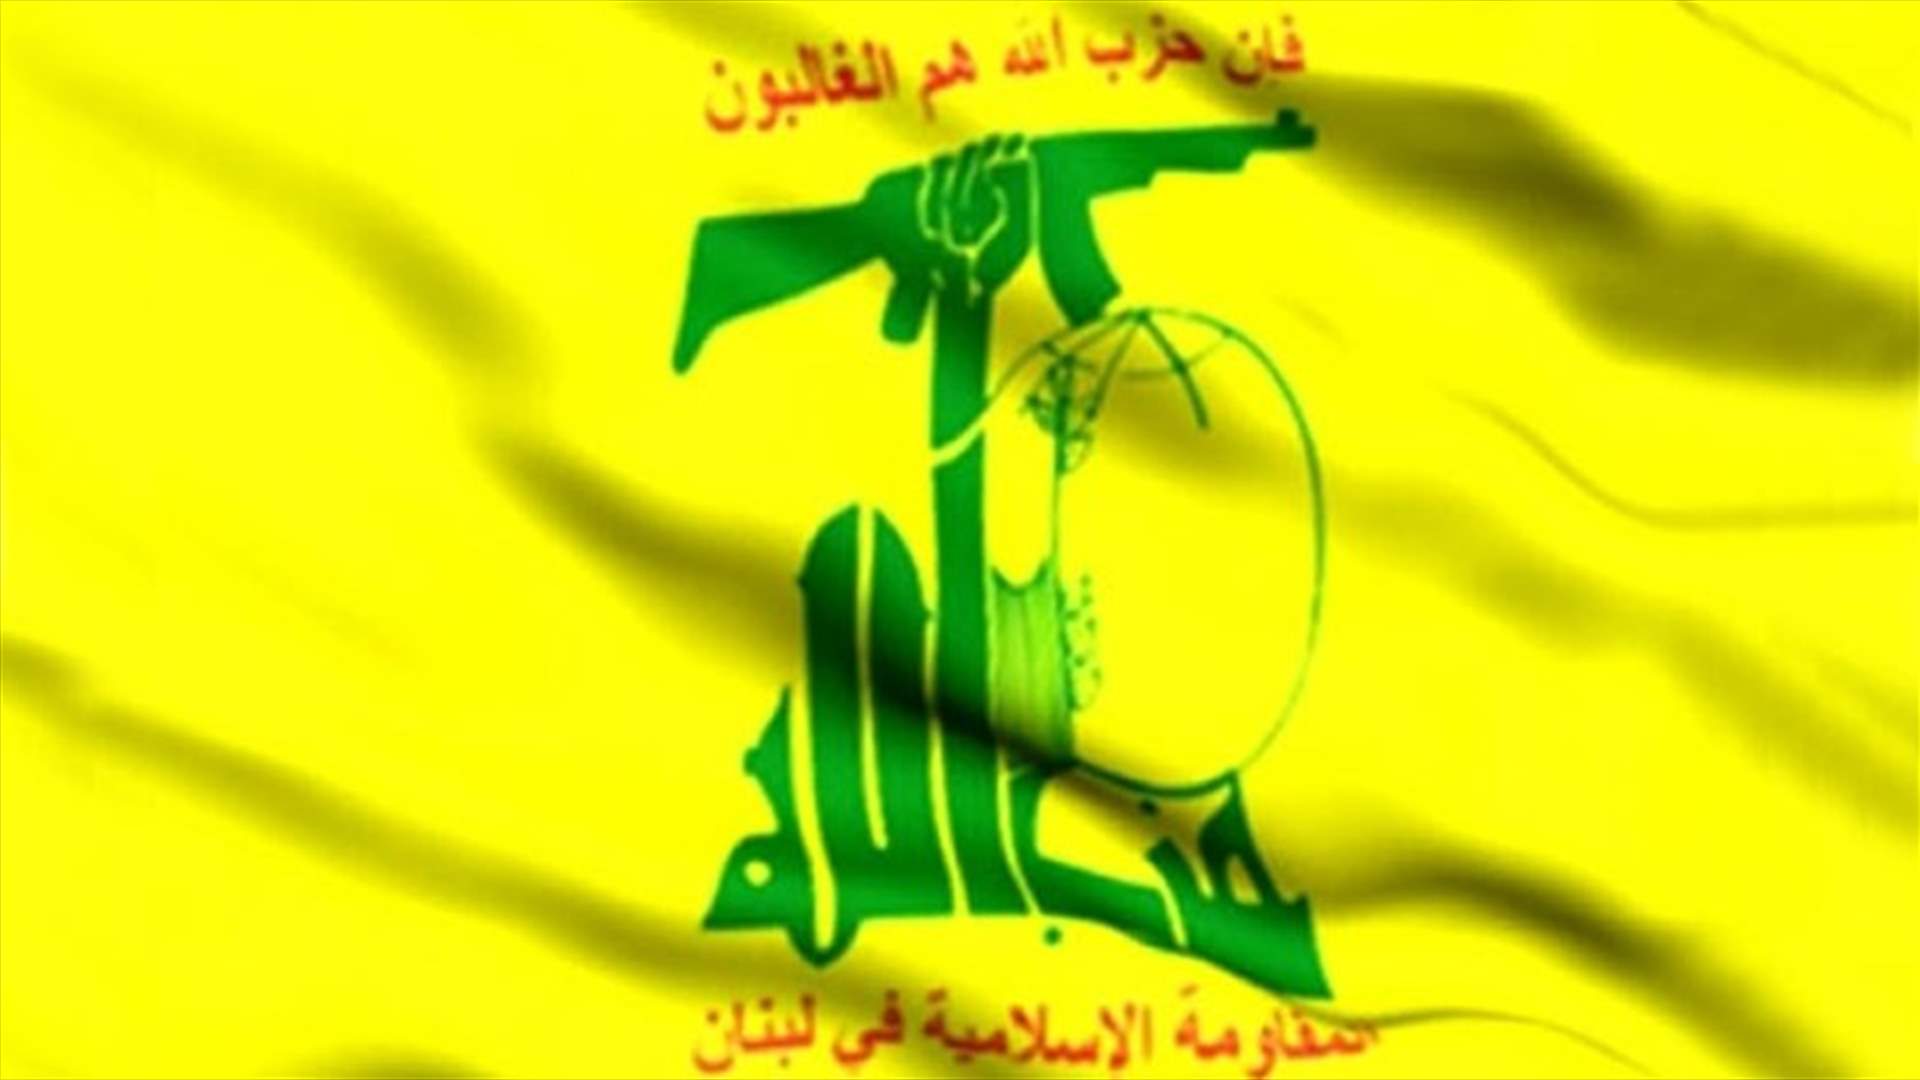  حزب الله حسم امره...